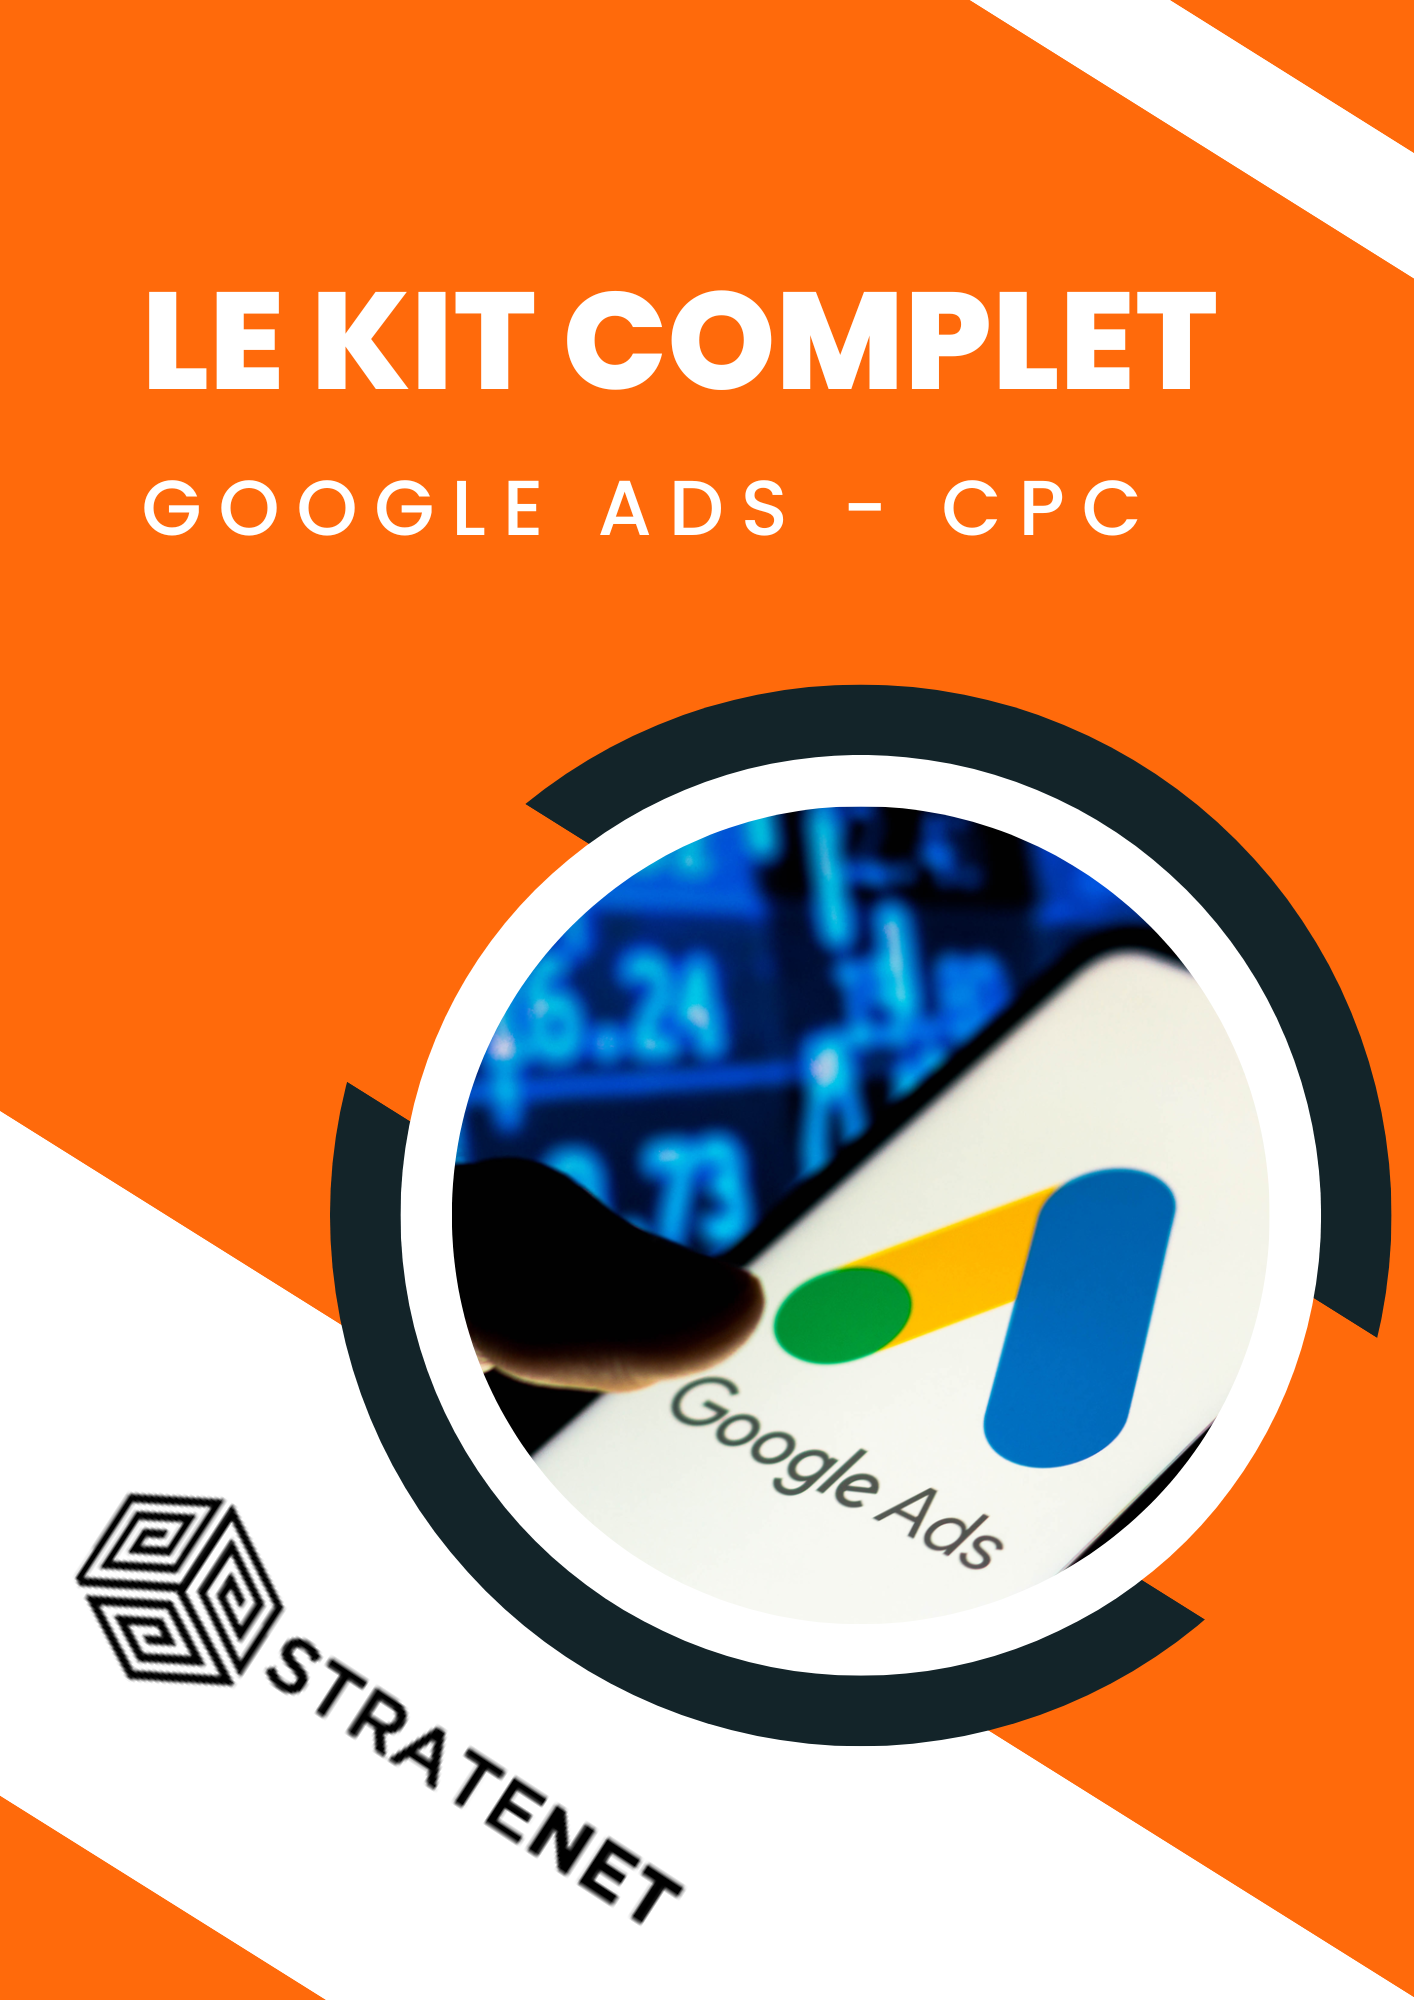 Le Kit Complet Google Ads